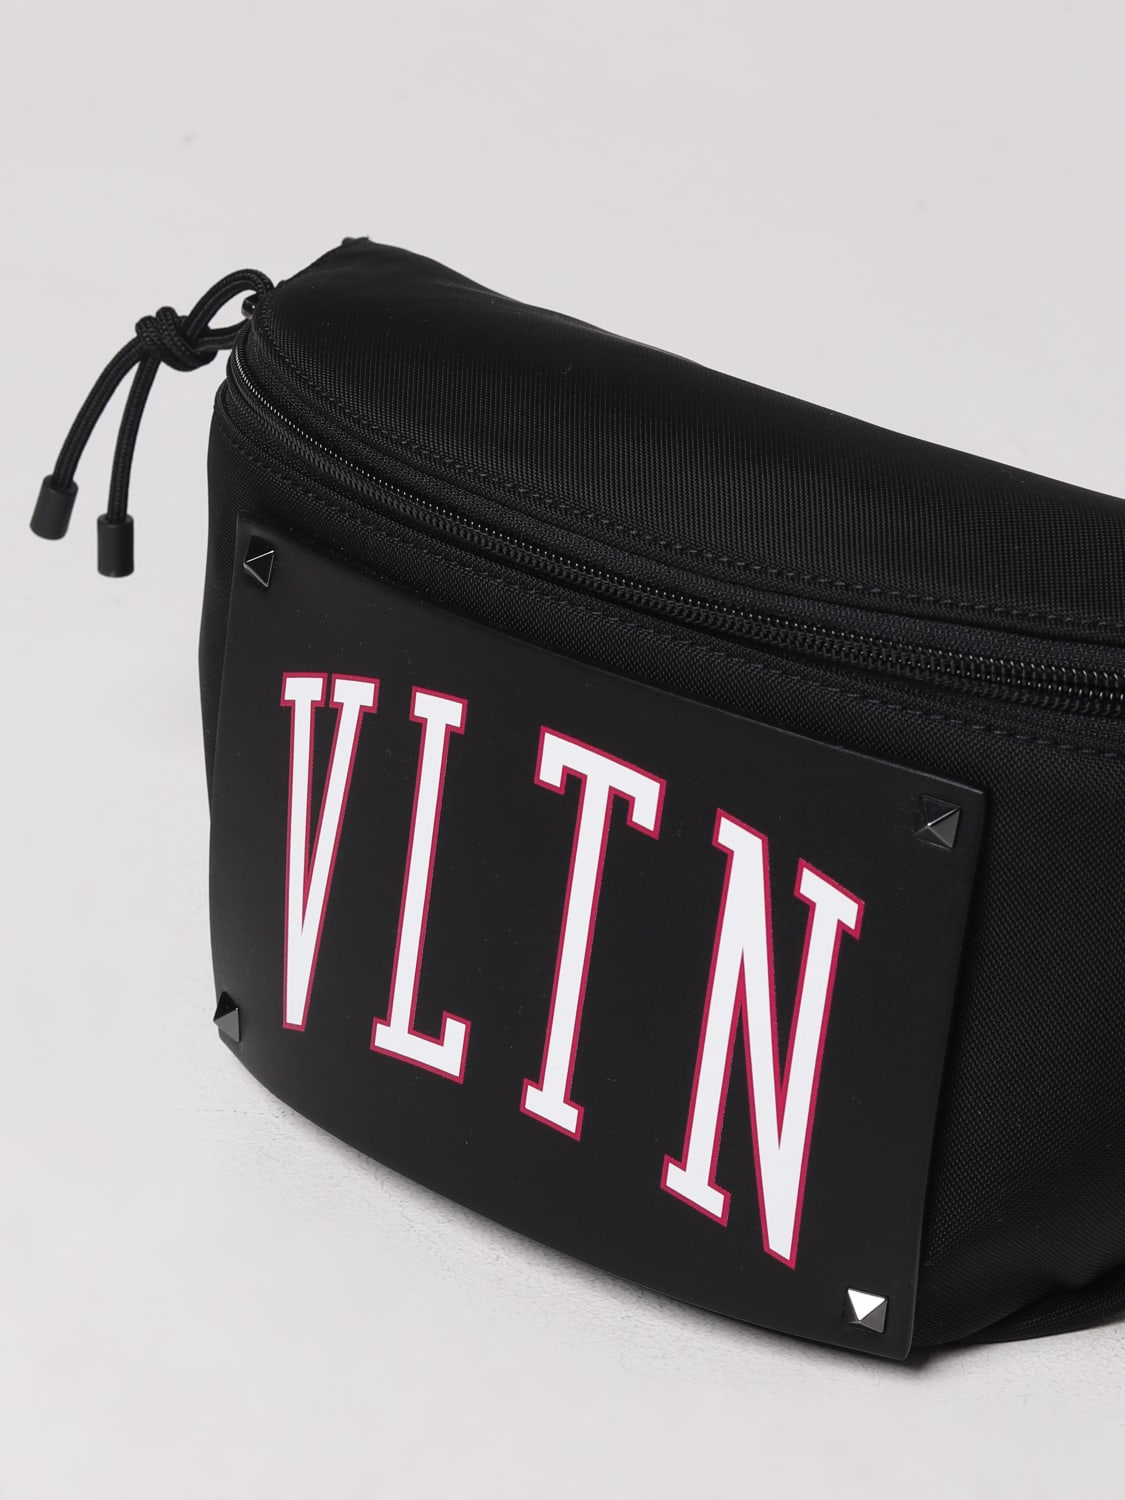 Valentino Garavani Men's Vltn Nylon Belt Bag - Black - Belt Bags